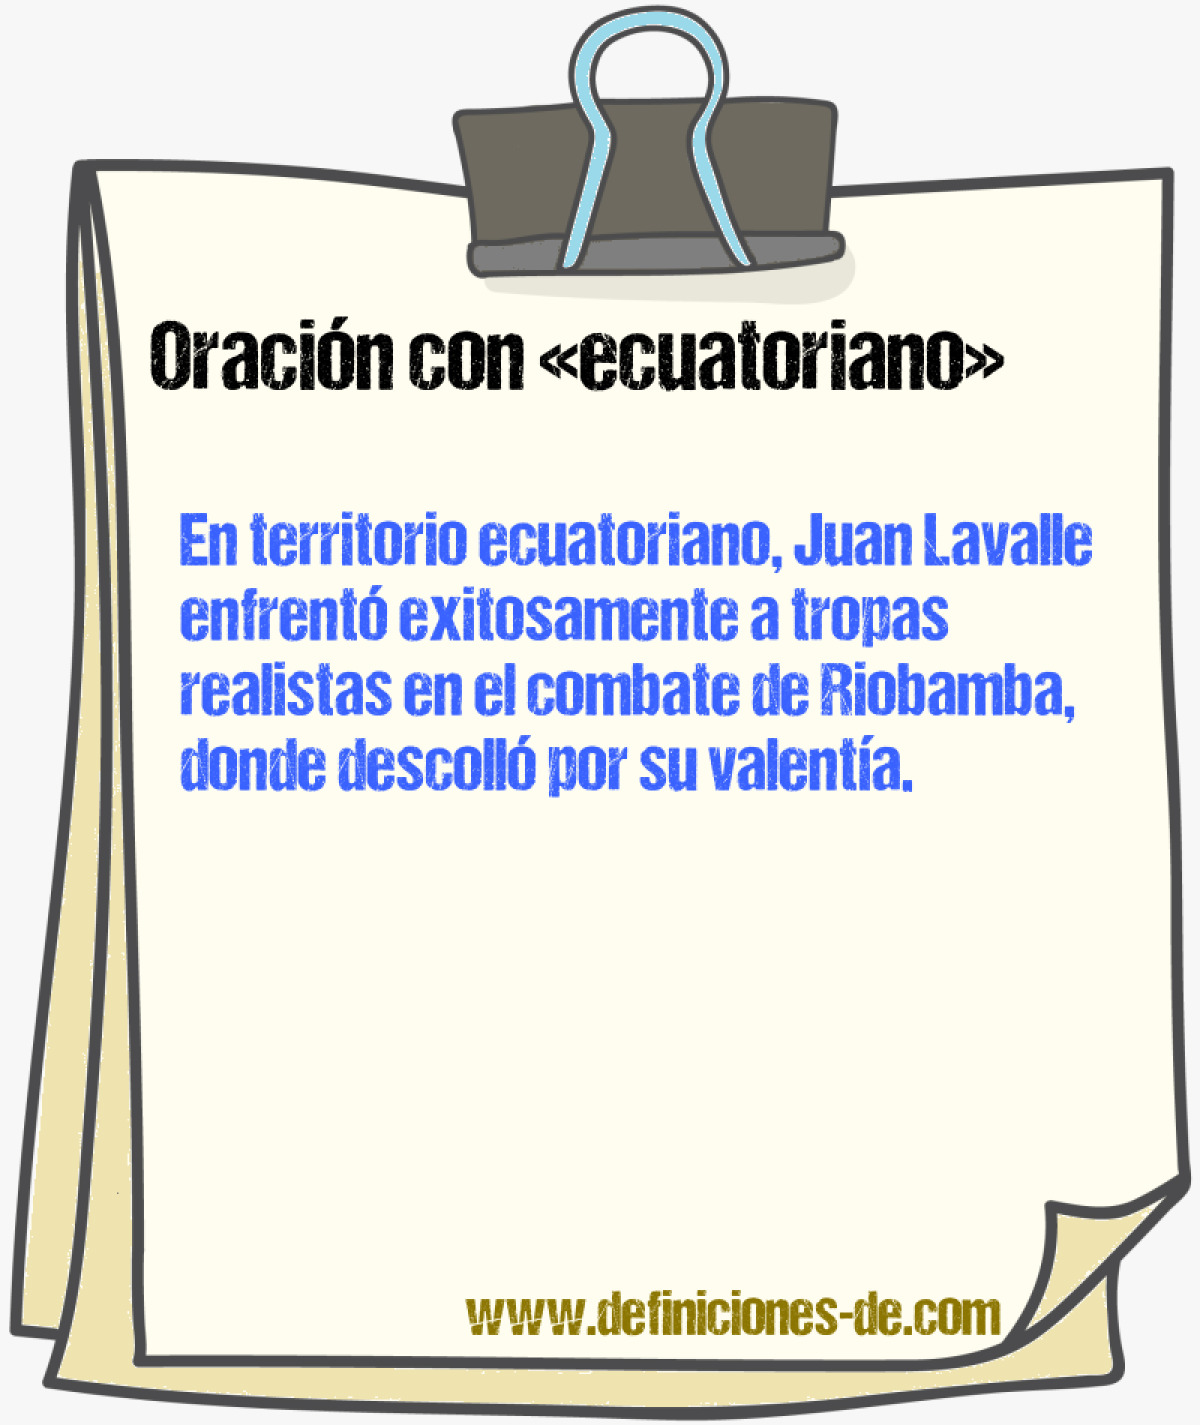 Ejemplos de oraciones con ecuatoriano